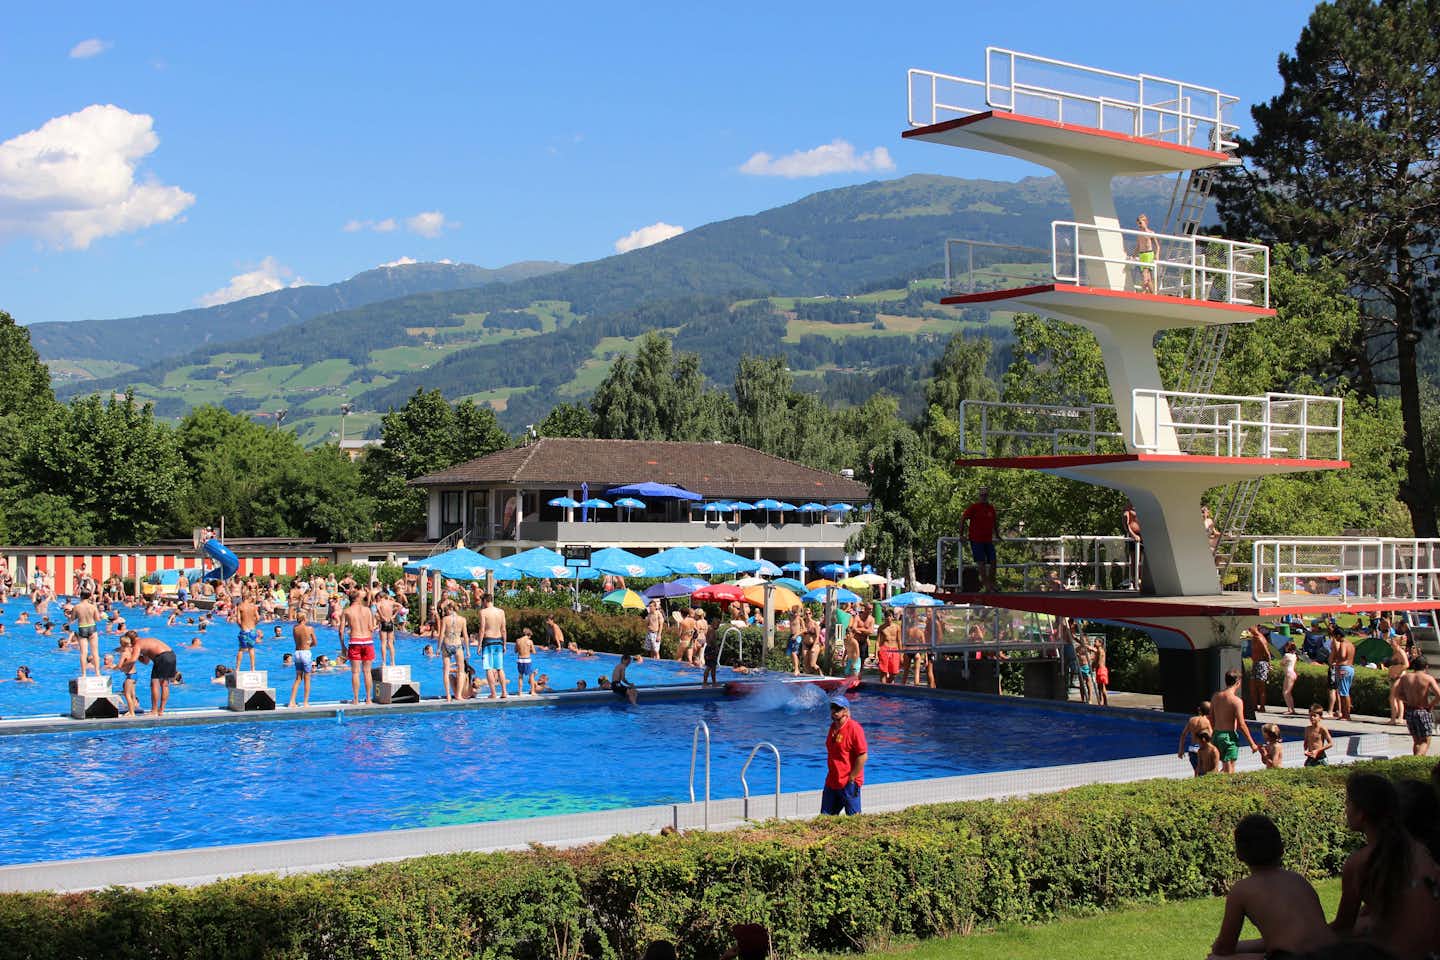 Schwimmbad-Camping  -  Poolbereich mit 10-Meter-Turm und Blick auf die Berge